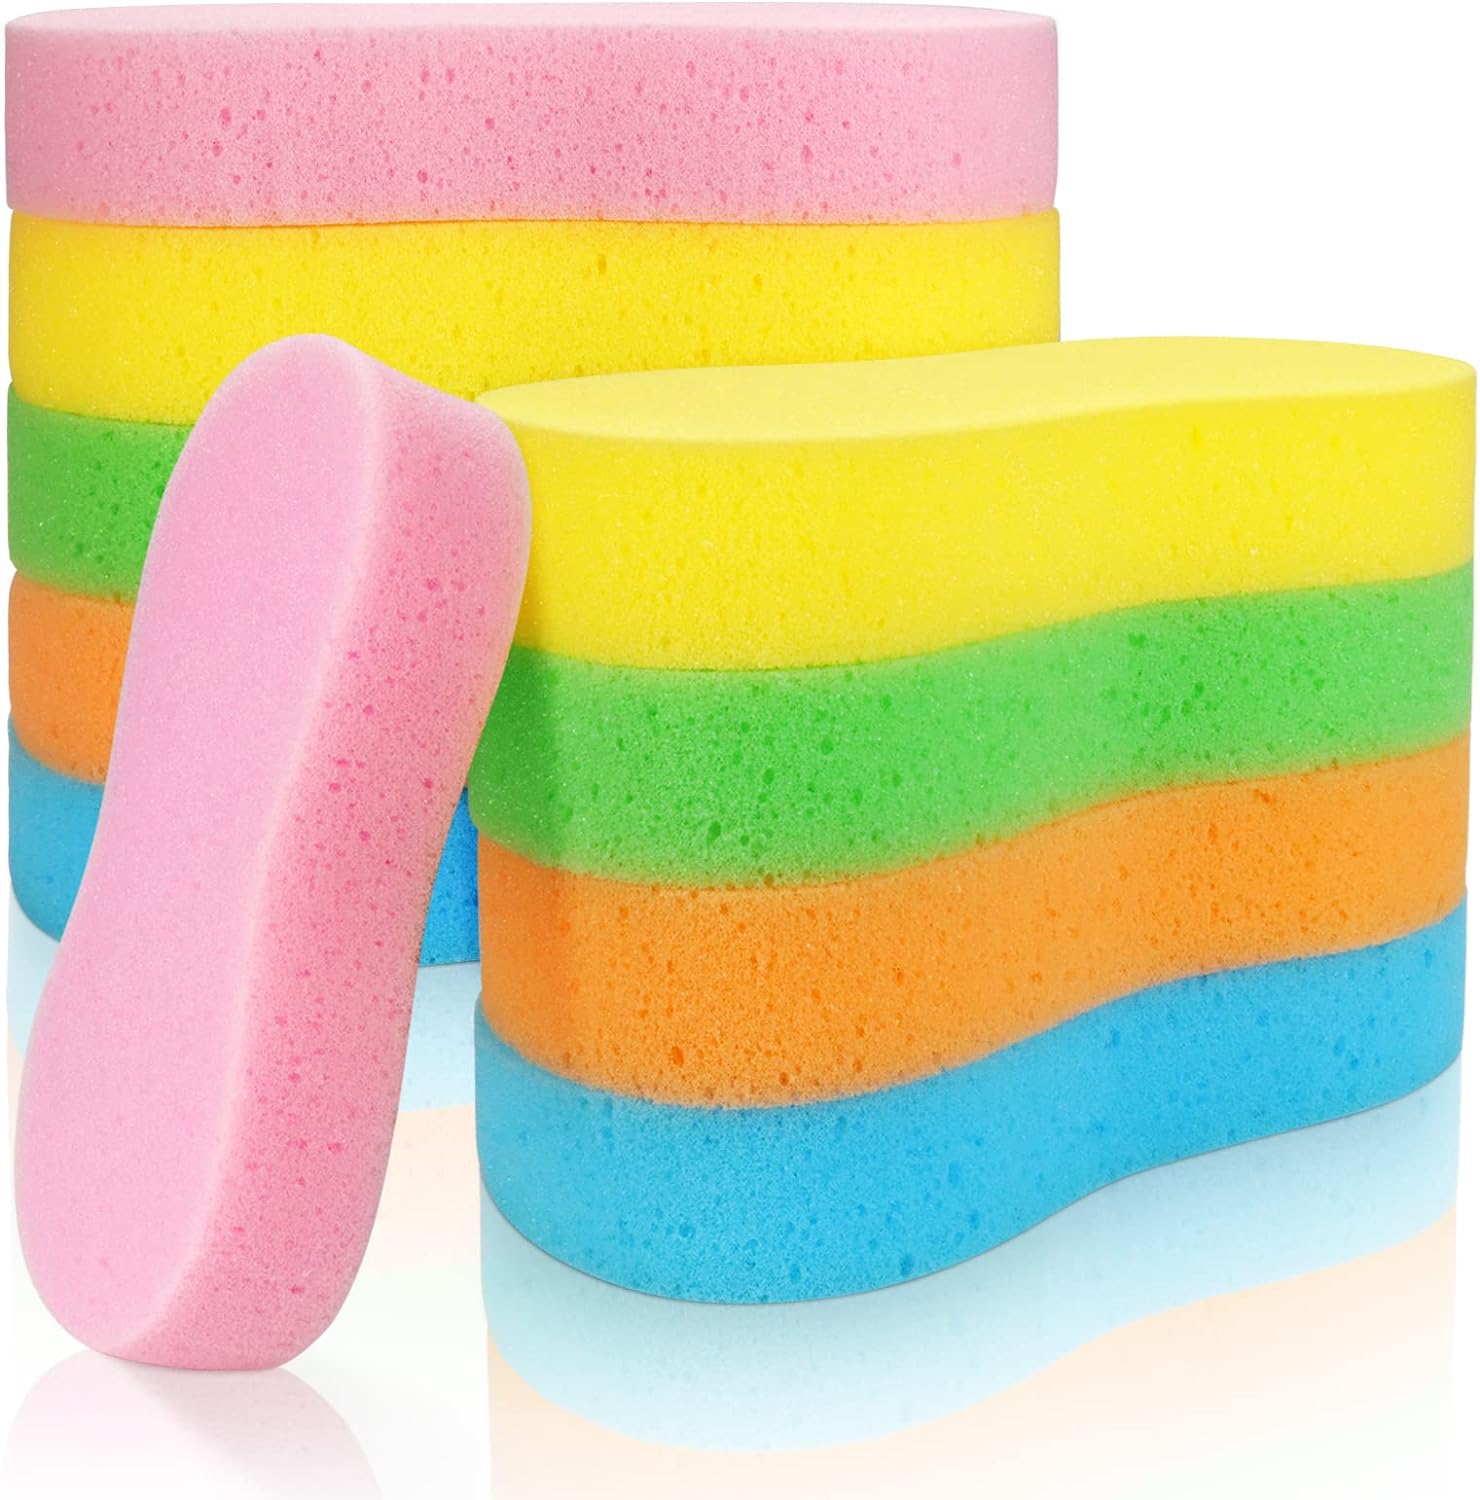 Generic Faxco 10 Pcs Car Wash Sponges, Car Cleaning Large Sponges, Washing Car Sponge Pads, Colorful Soft Wash Sponge Pads